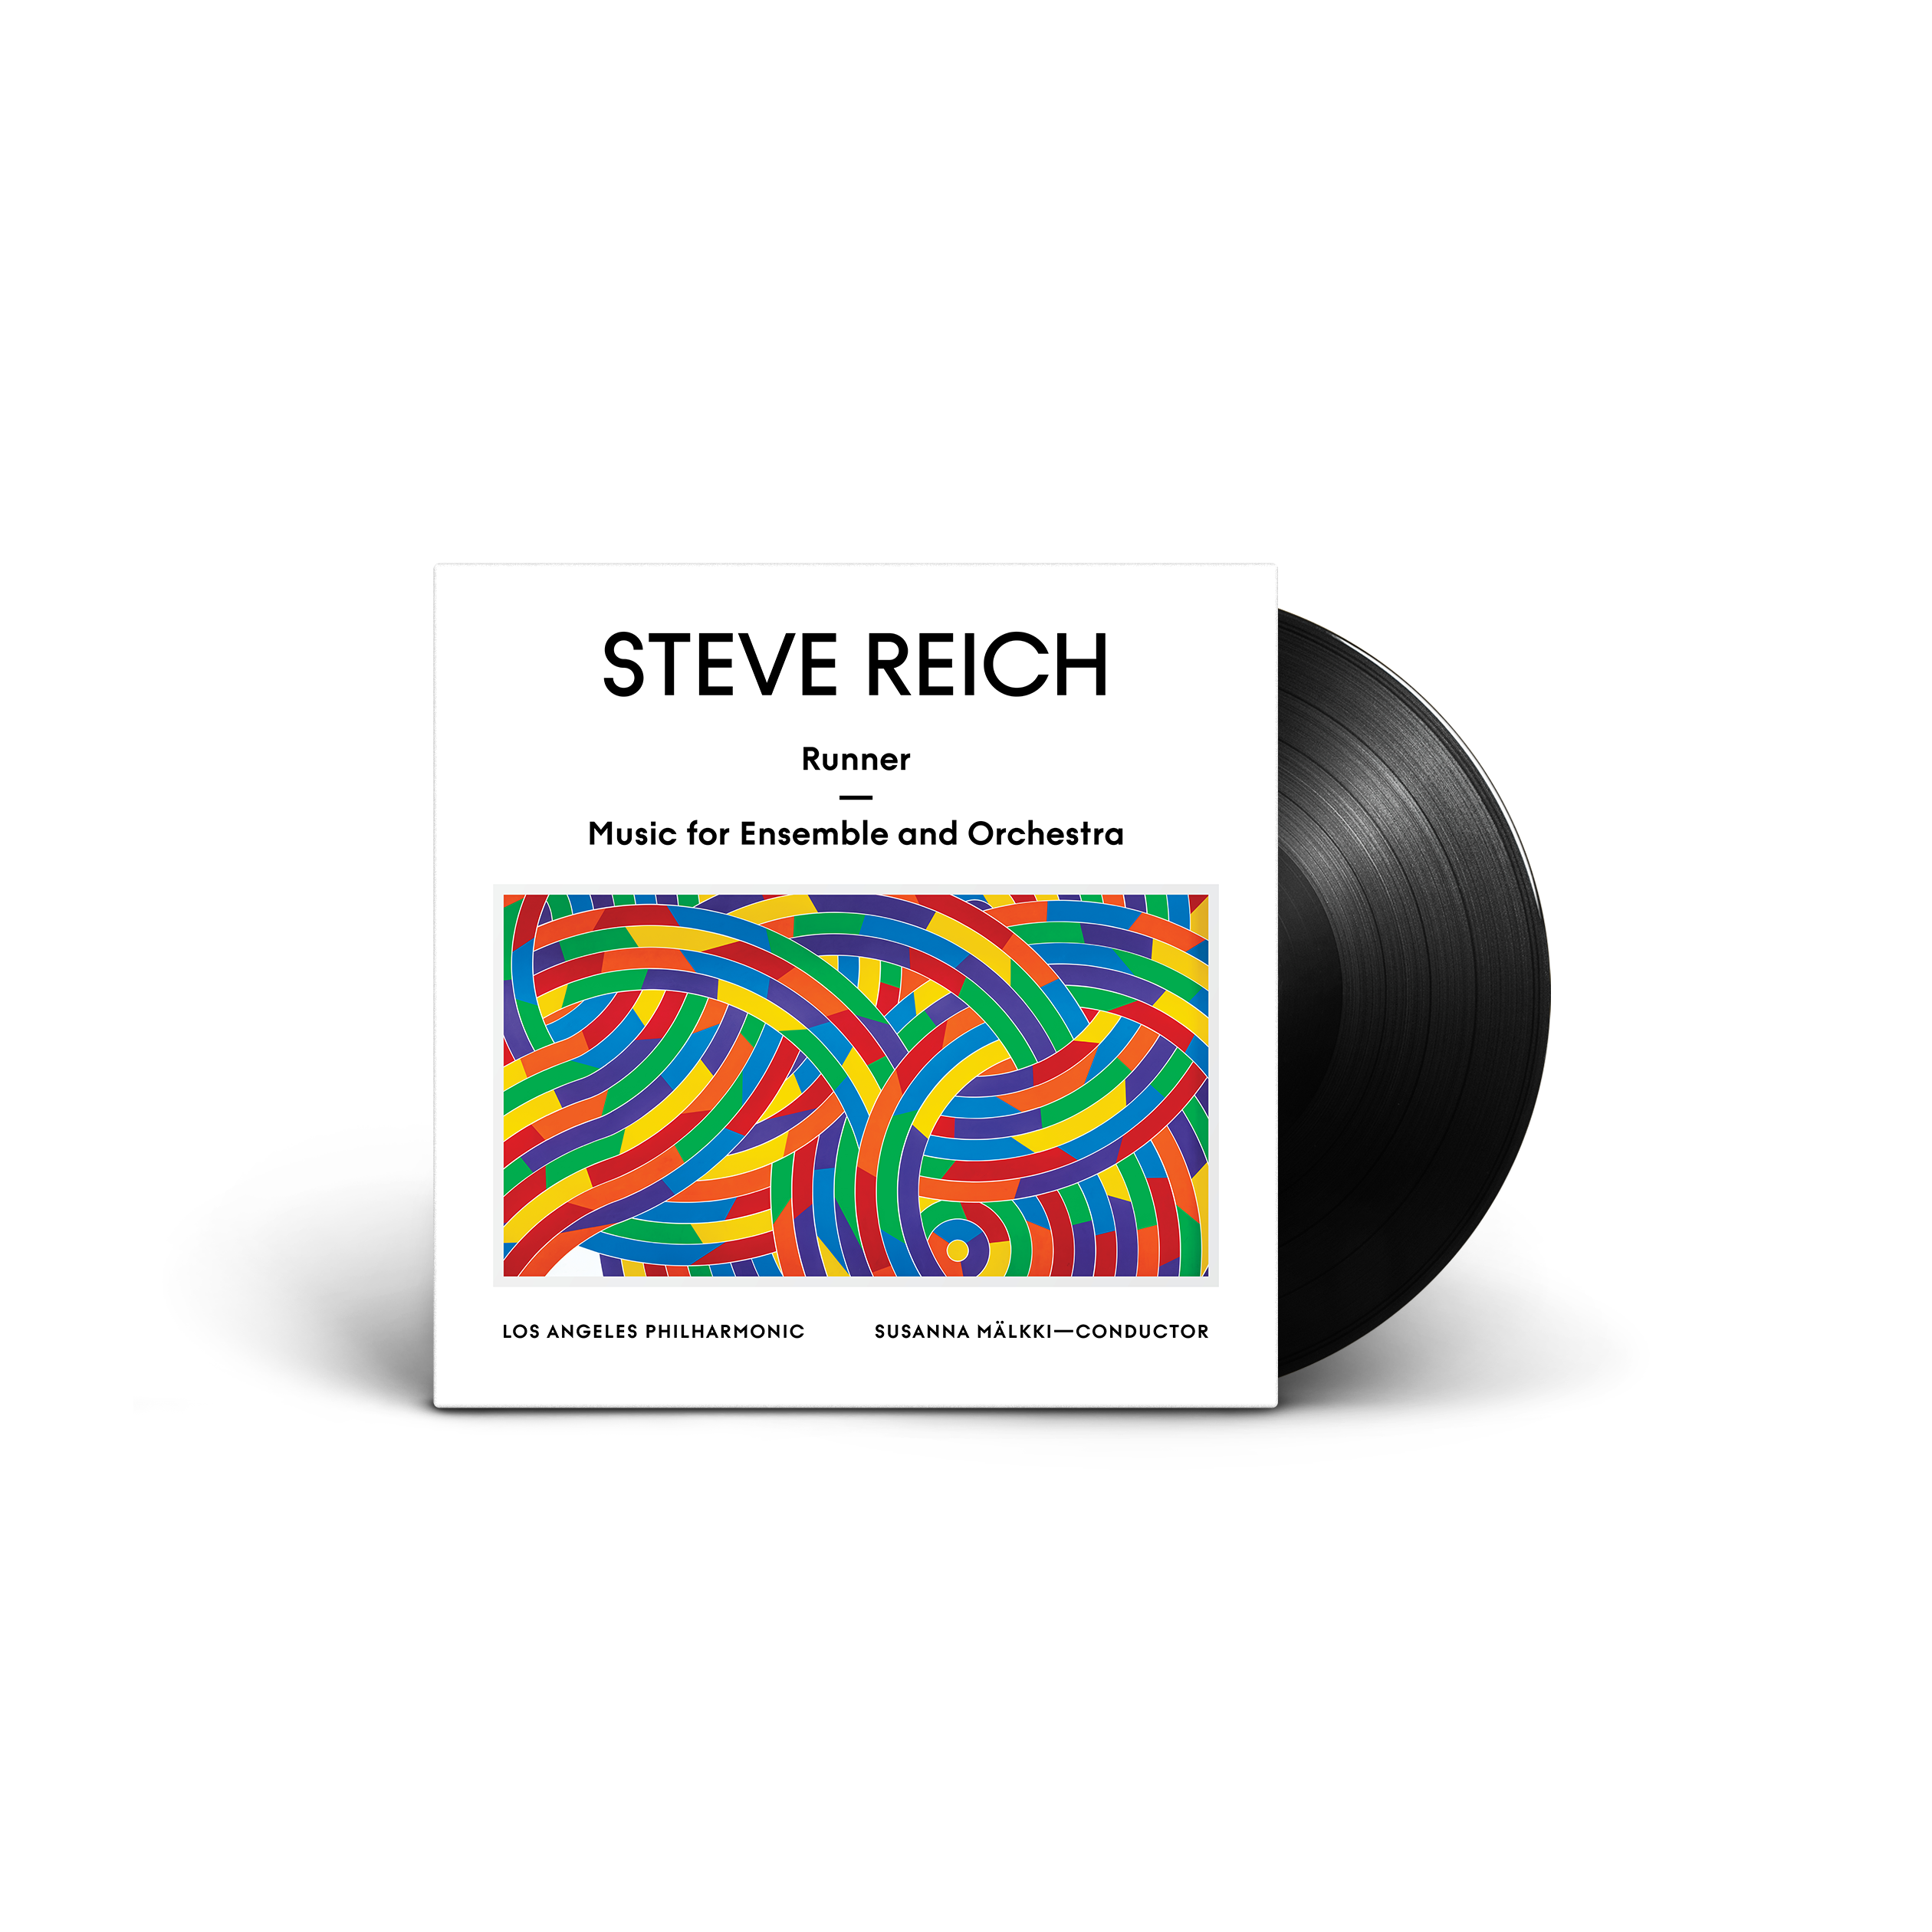 Album artwork for Album artwork for Runner / Music for Ensemble & Orchestra by Steve Reich by Runner / Music for Ensemble & Orchestra - Steve Reich